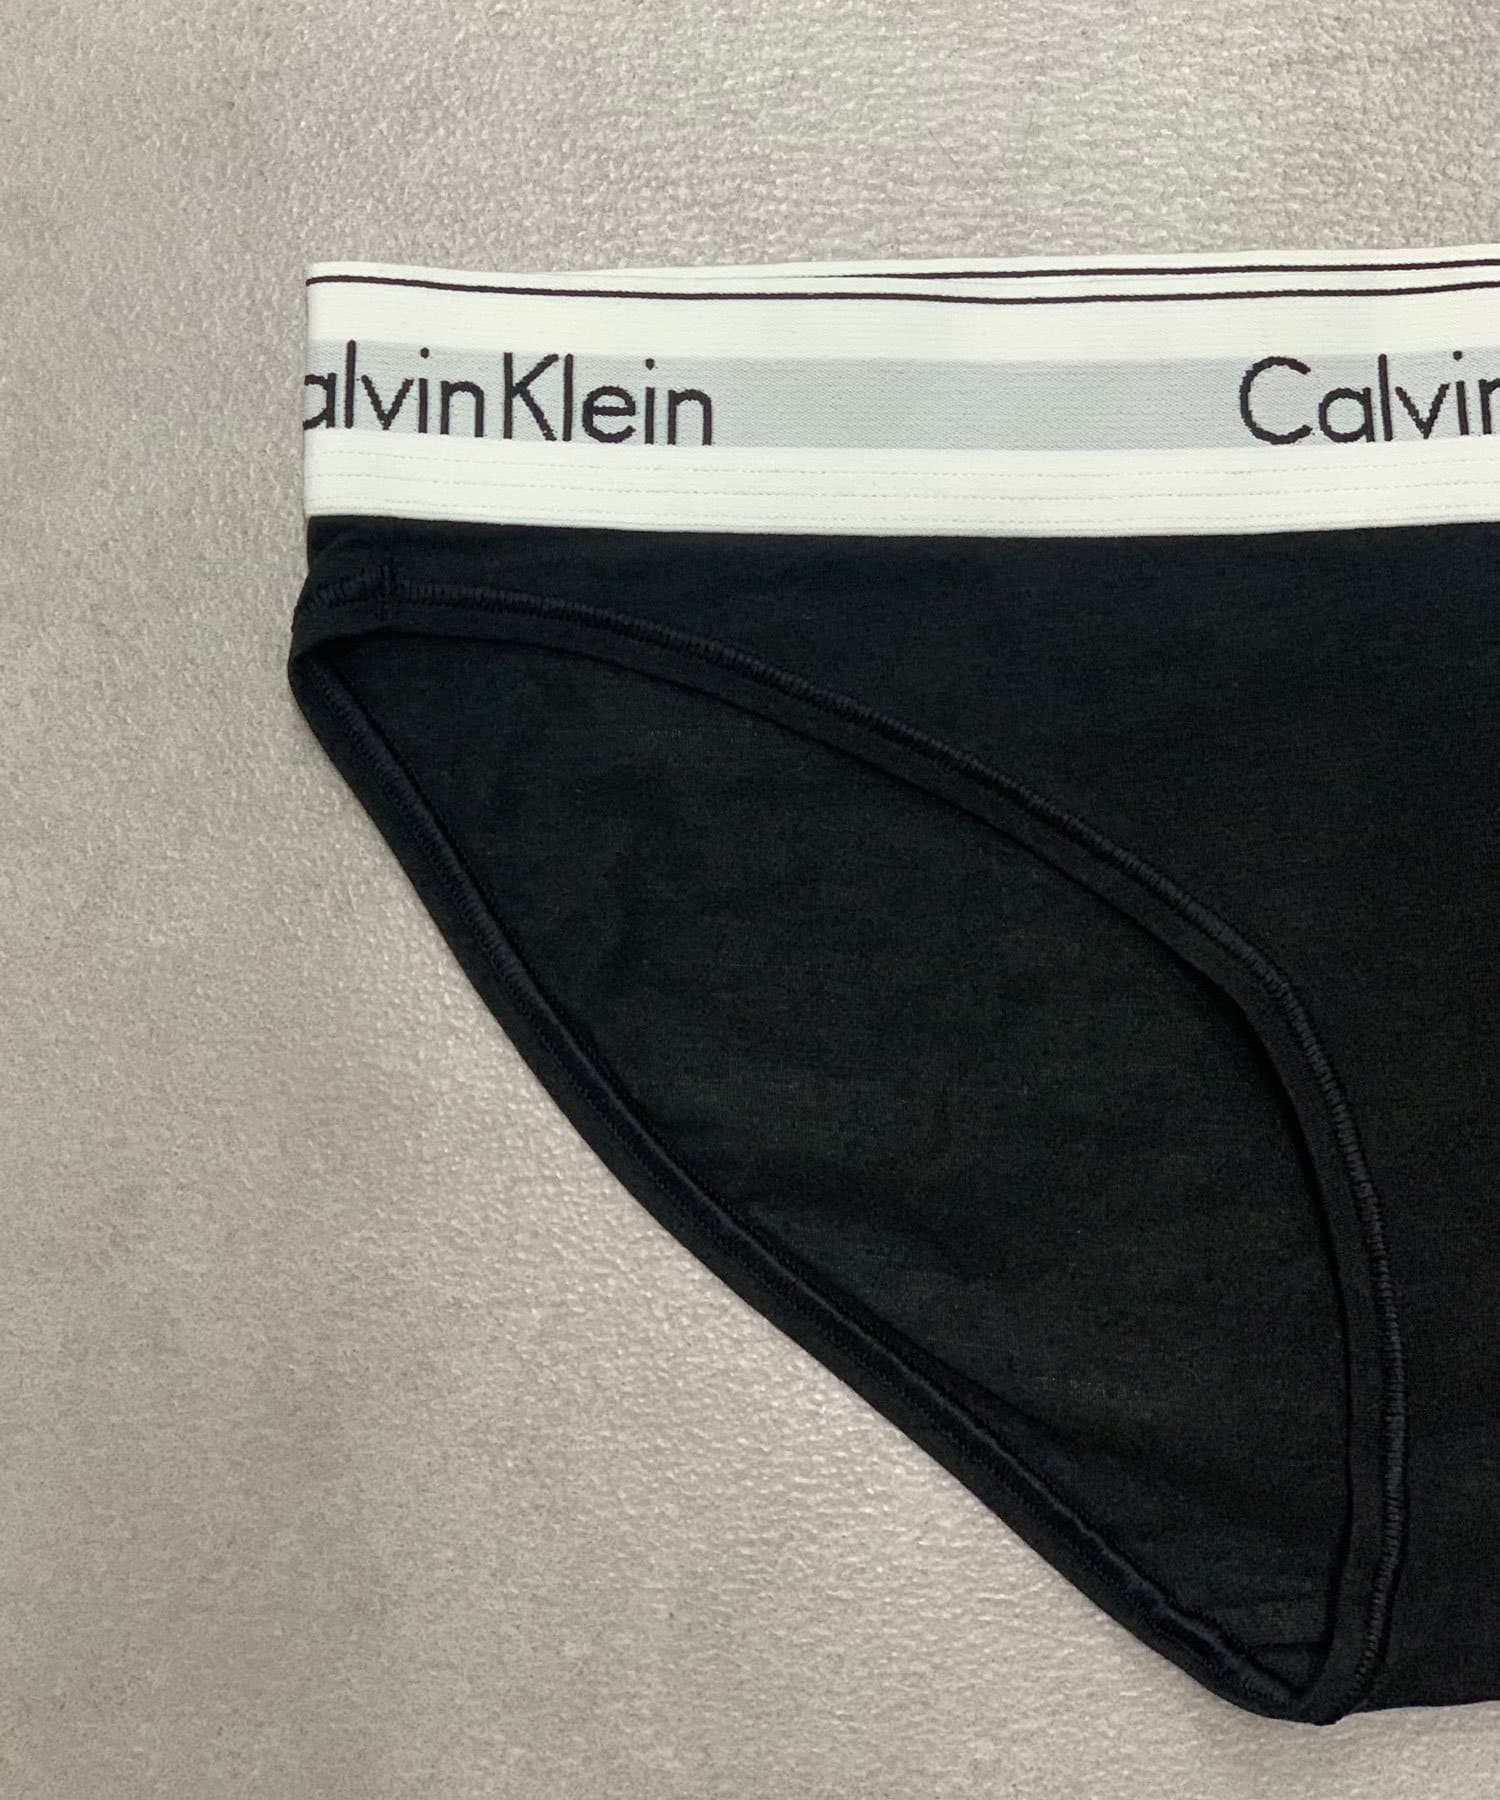 CIAOPANIC(チャオパニック) 【Calvin Klein】MODERN COTTON - ビキニショーツ